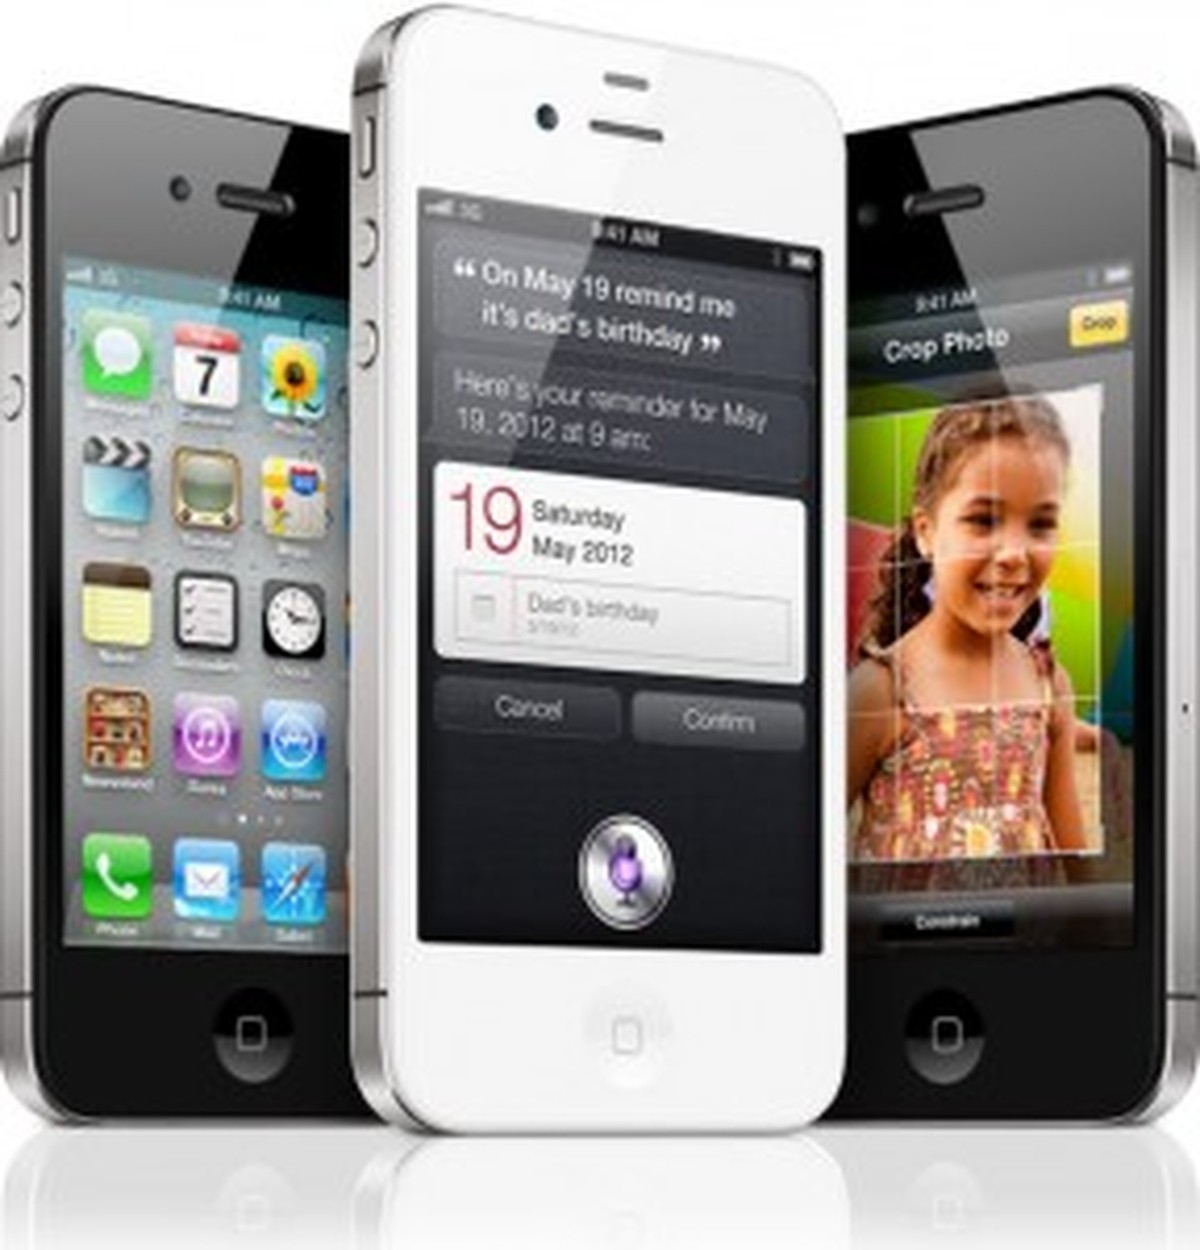 iPhone 4S pode chegar às lojas brasileiras em dezembro | Notícias | TechTudo